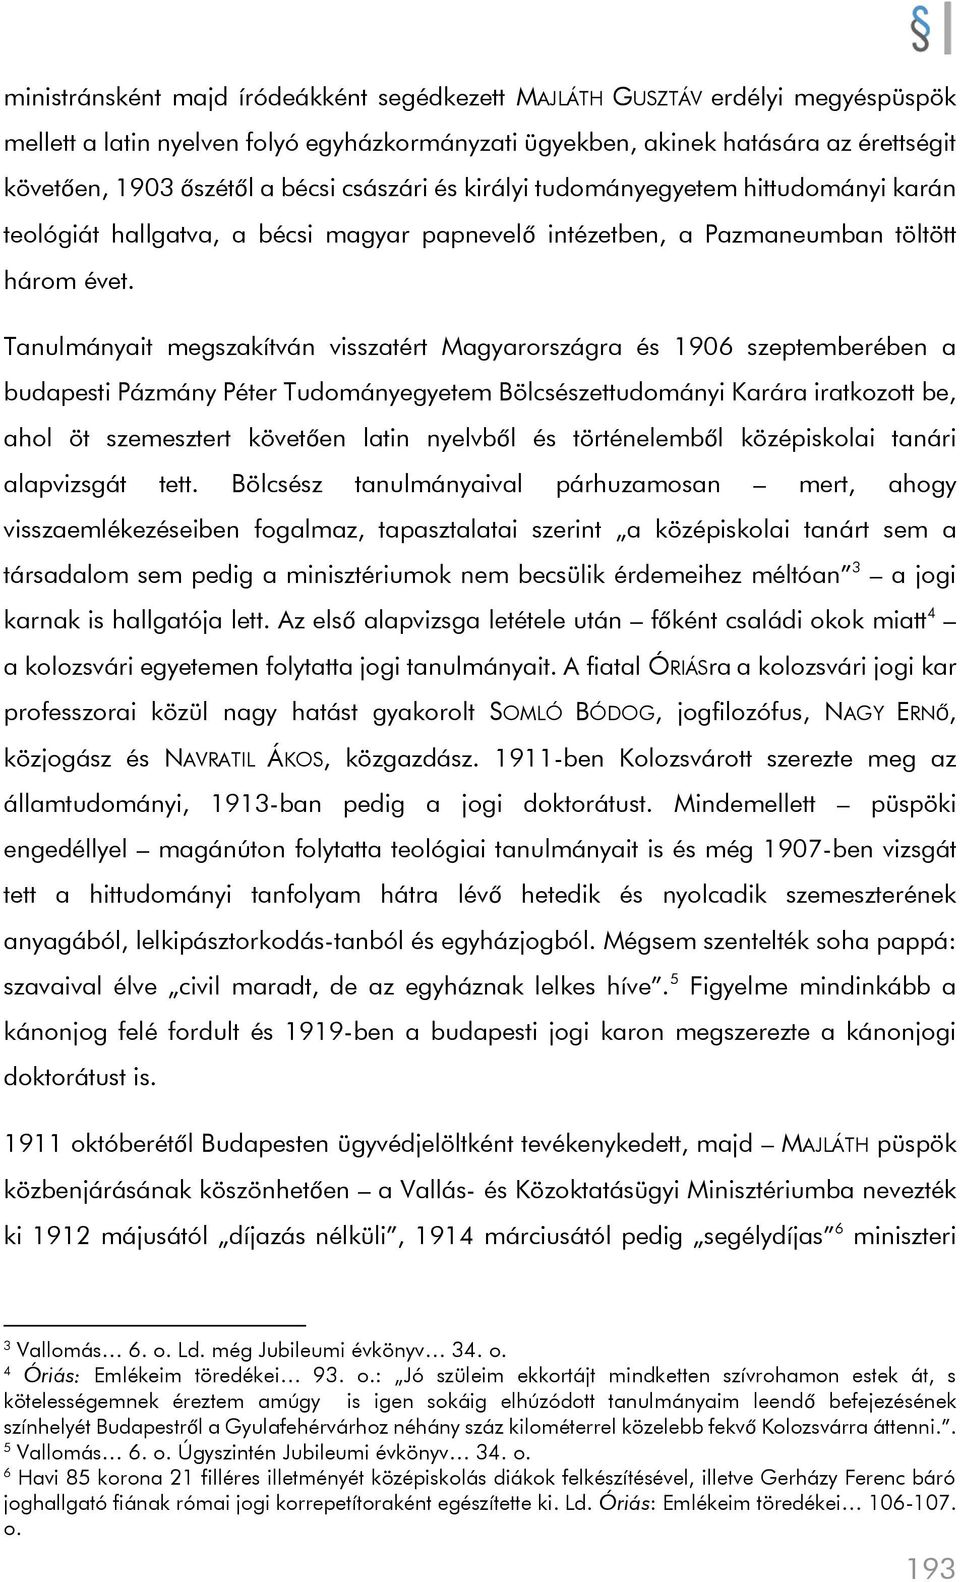 Tanulmányait megszakítván visszatért Magyarországra és 1906 szeptemberében a budapesti Pázmány Péter Tudományegyetem Bölcsészettudományi Karára iratkozott be, ahol öt szemesztert követően latin